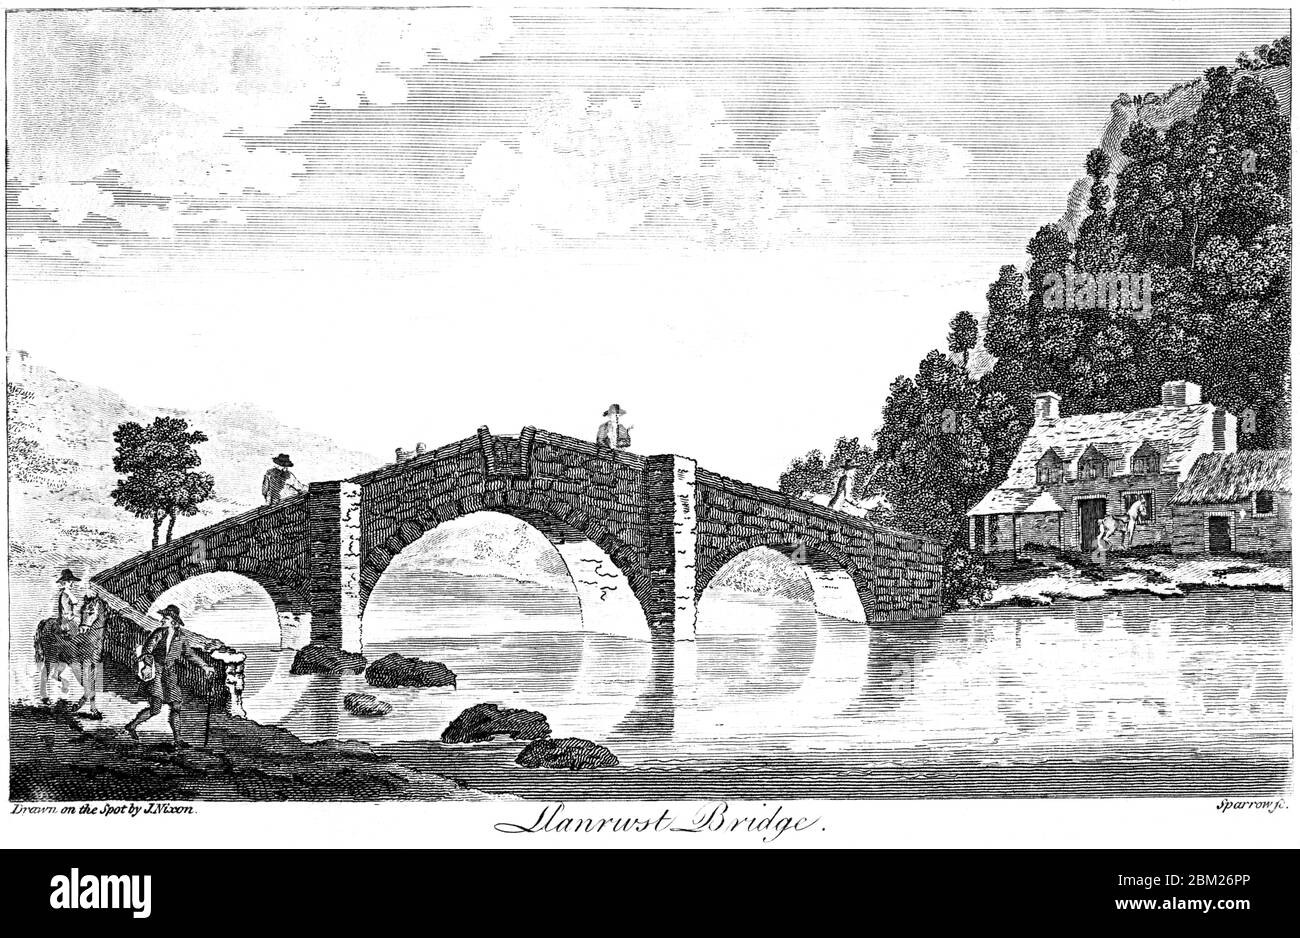 Eine Gravur der Llanrwst Bridge, gescannt in hoher Auflösung aus einem 1827 gedruckten Buch. Dieses Bild ist frei von allen Copyright-Einschränkungen Stockfoto